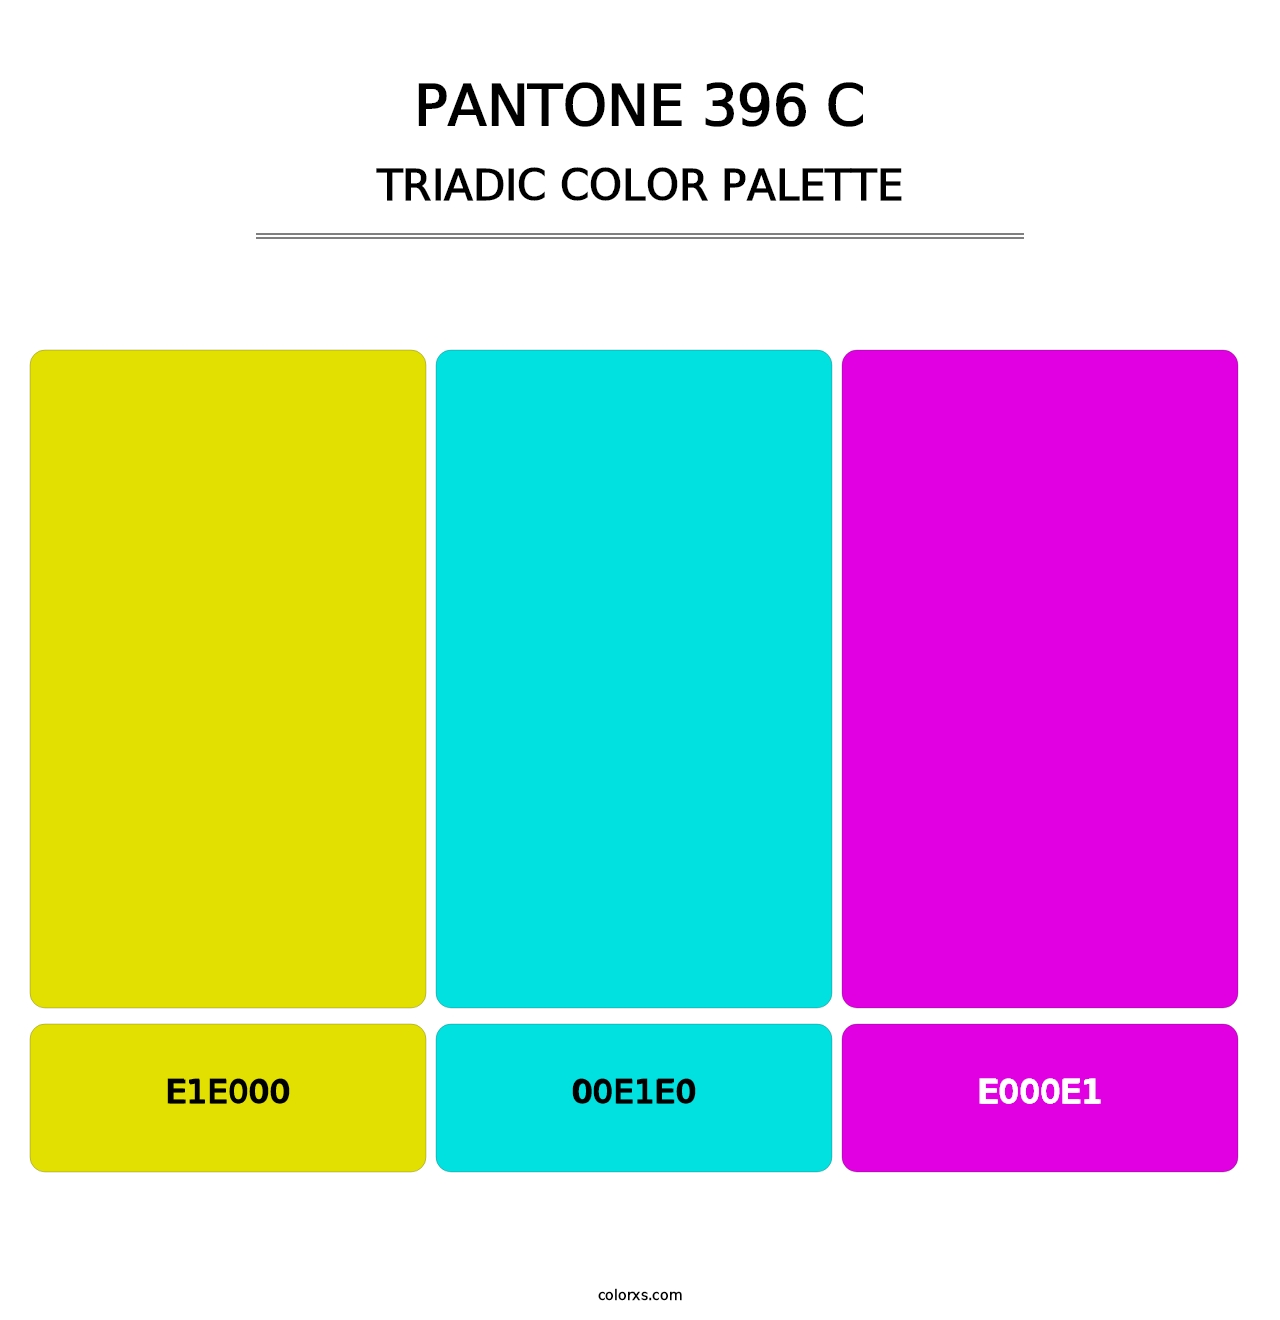 PANTONE 396 C - Triadic Color Palette